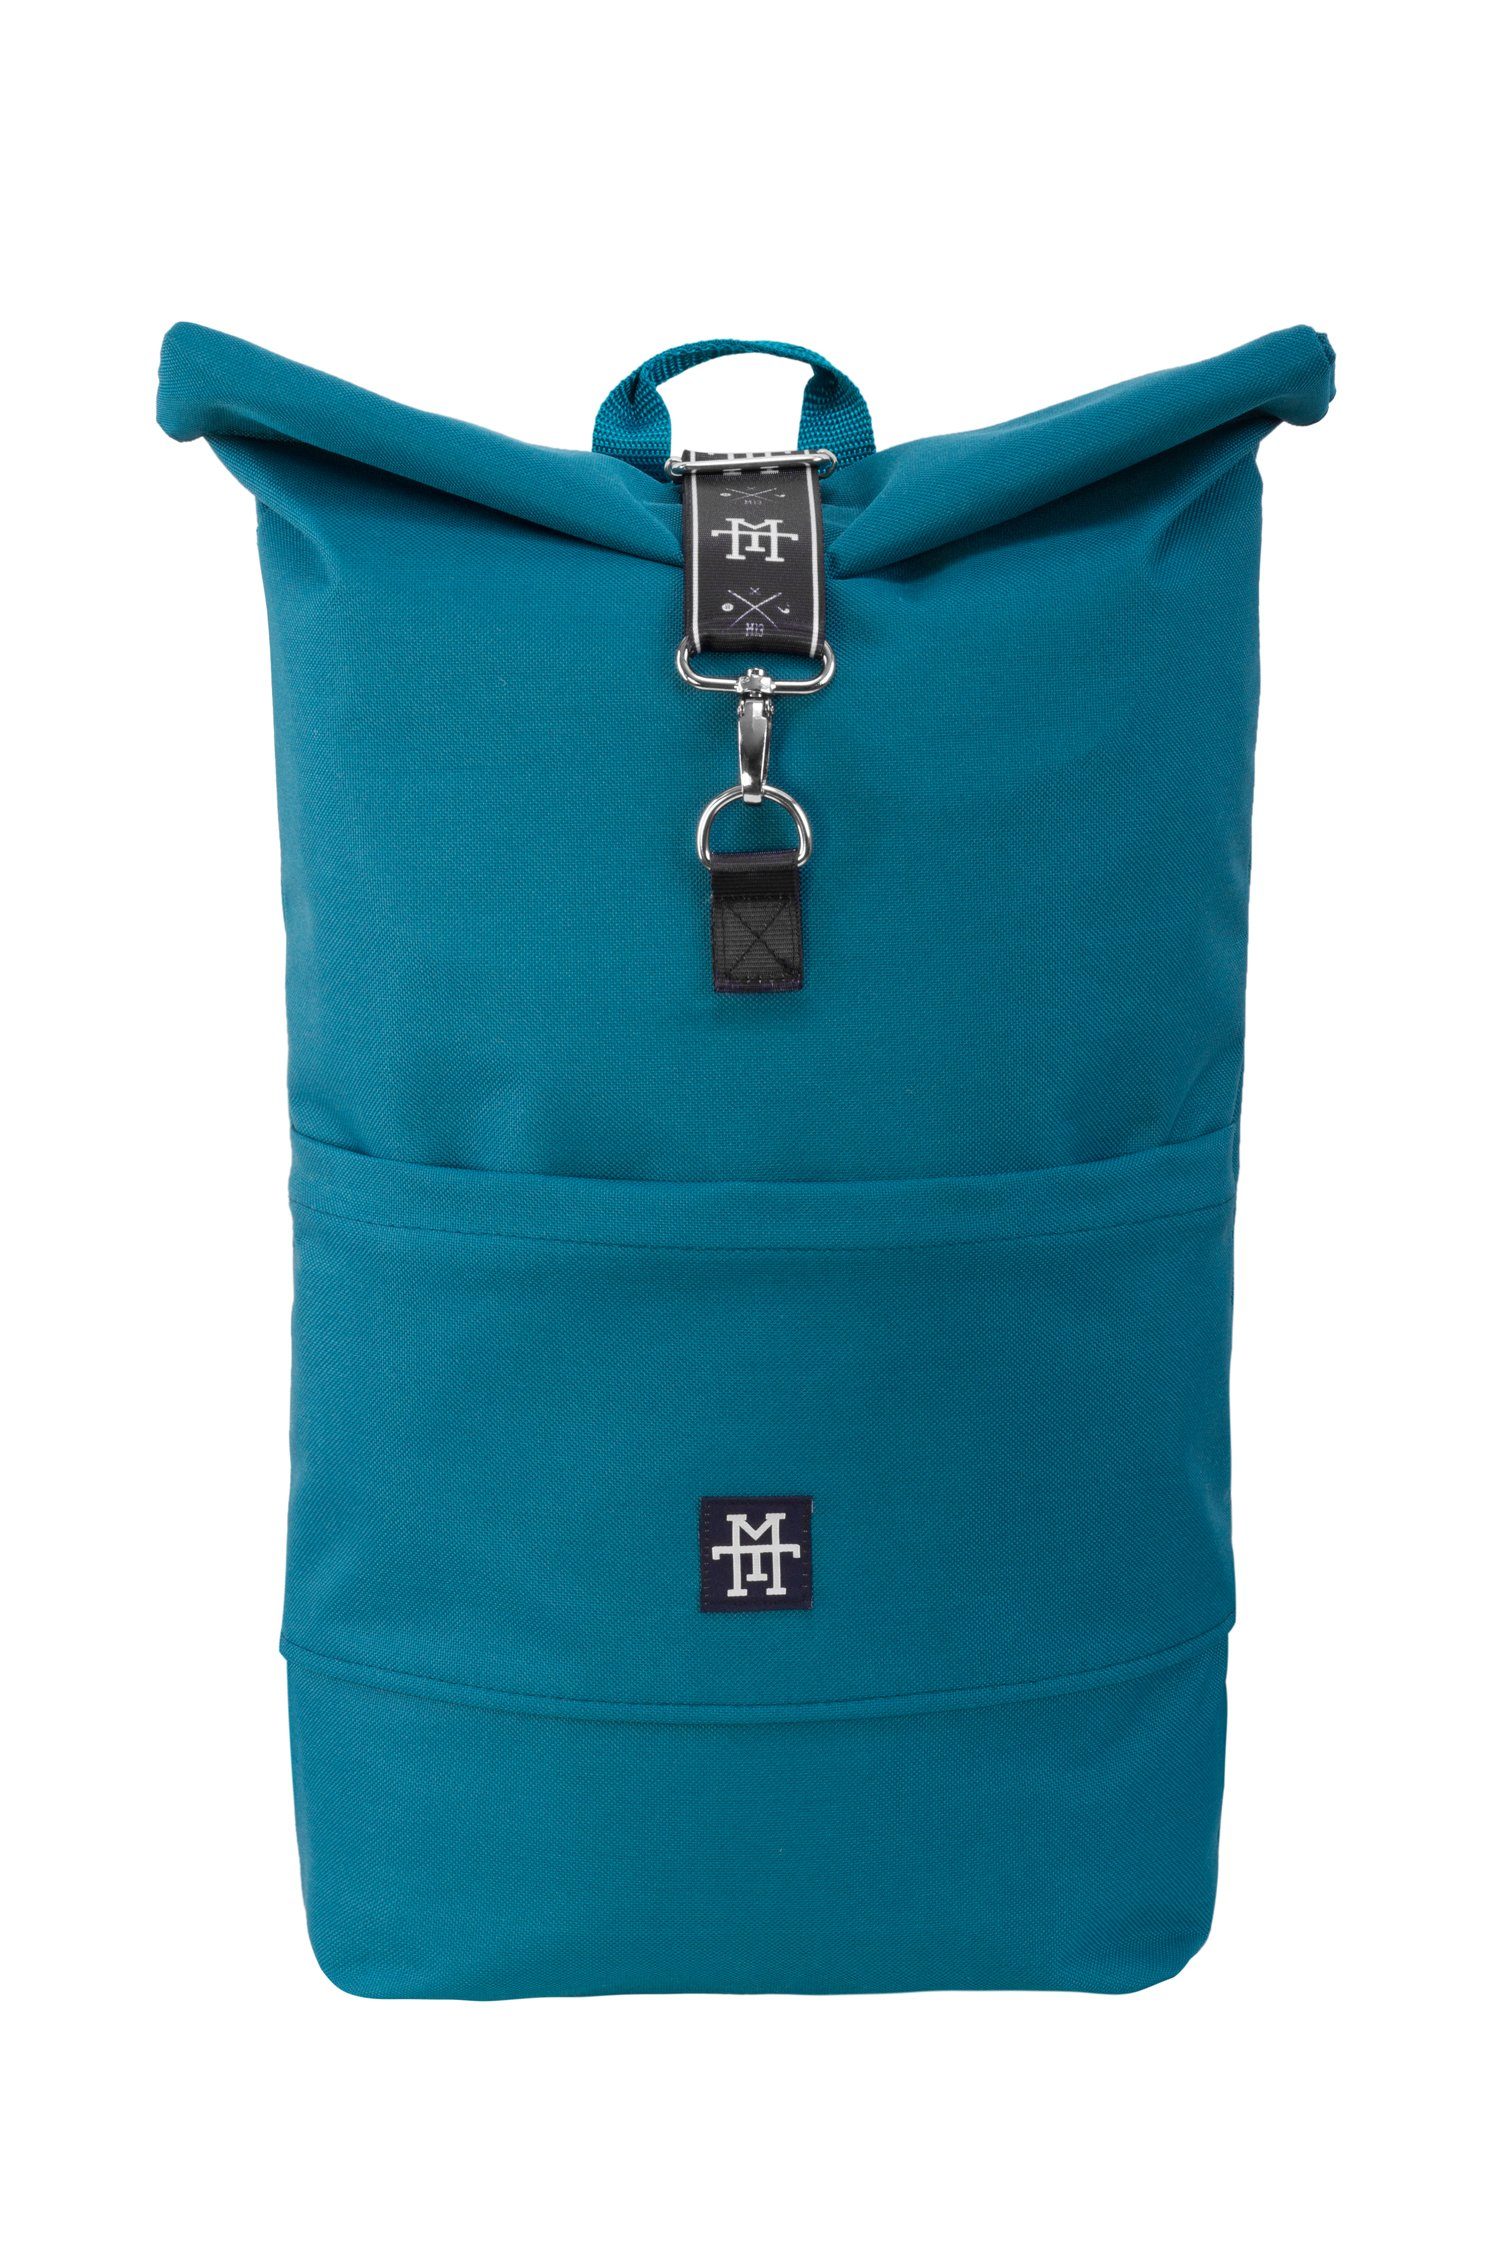 Manufaktur13 Tagesrucksack Roll-Top Backpack - Rucksack mit Rollverschluss, wasserdicht/wasserabweisend, verstellbare Gurte Petrol Taped Edition